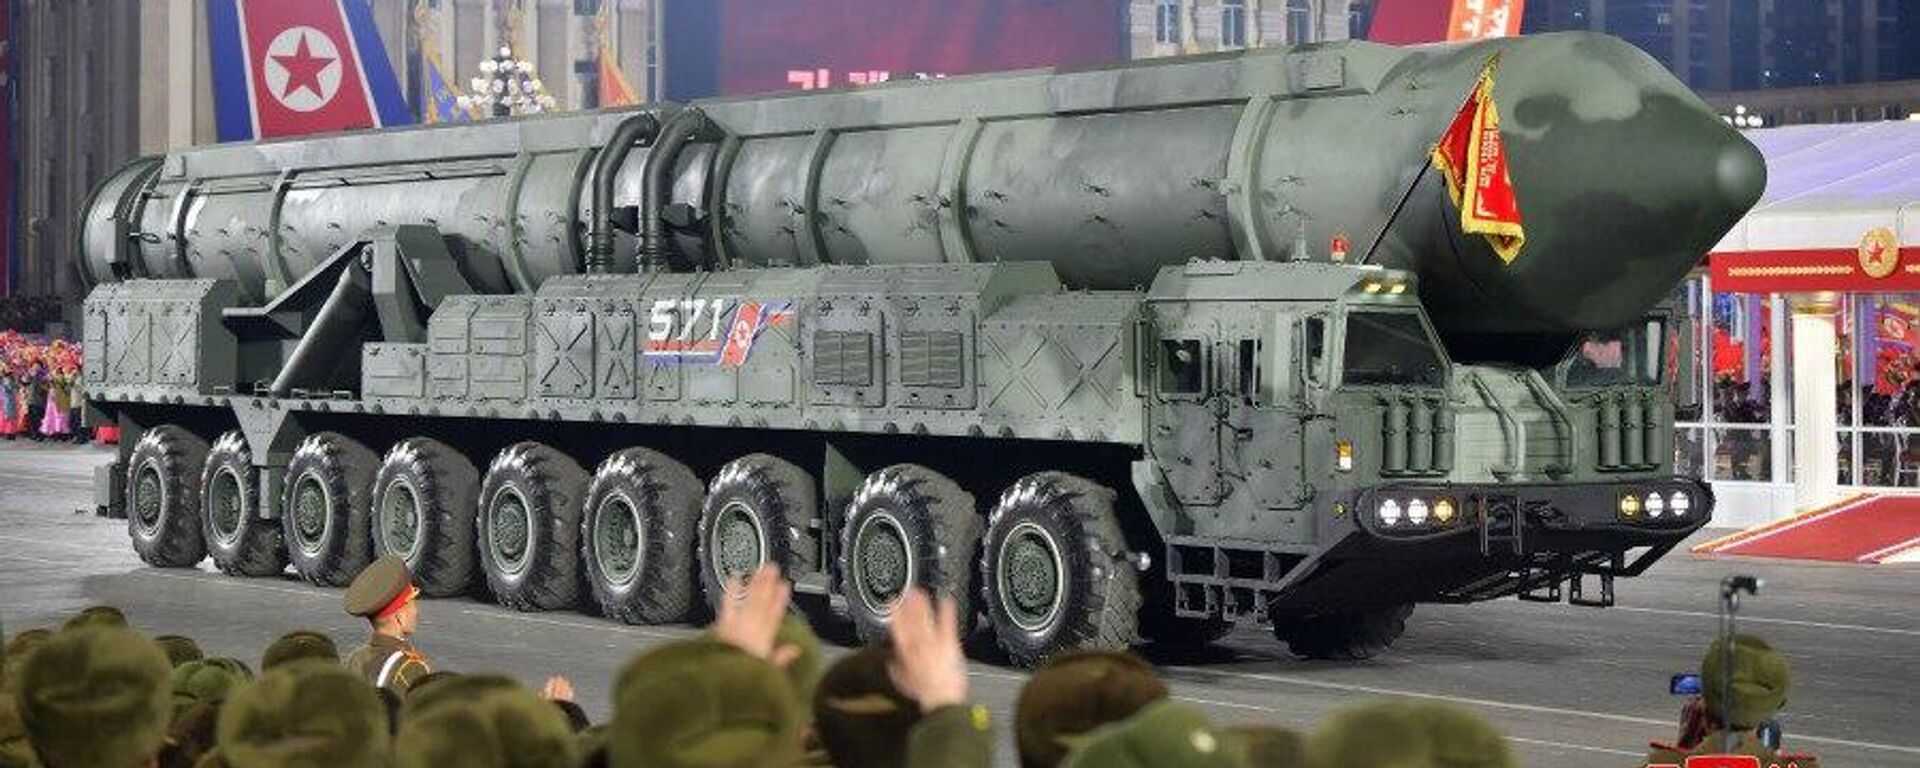 Coreia do Norte comemora 75 anos de seu Exército e mostra possível novo míssil intercontinental durante um grande desfile militar na capital norte-coreana, Pyongyang, em 8 de fevereiro - Sputnik Brasil, 1920, 18.12.2023